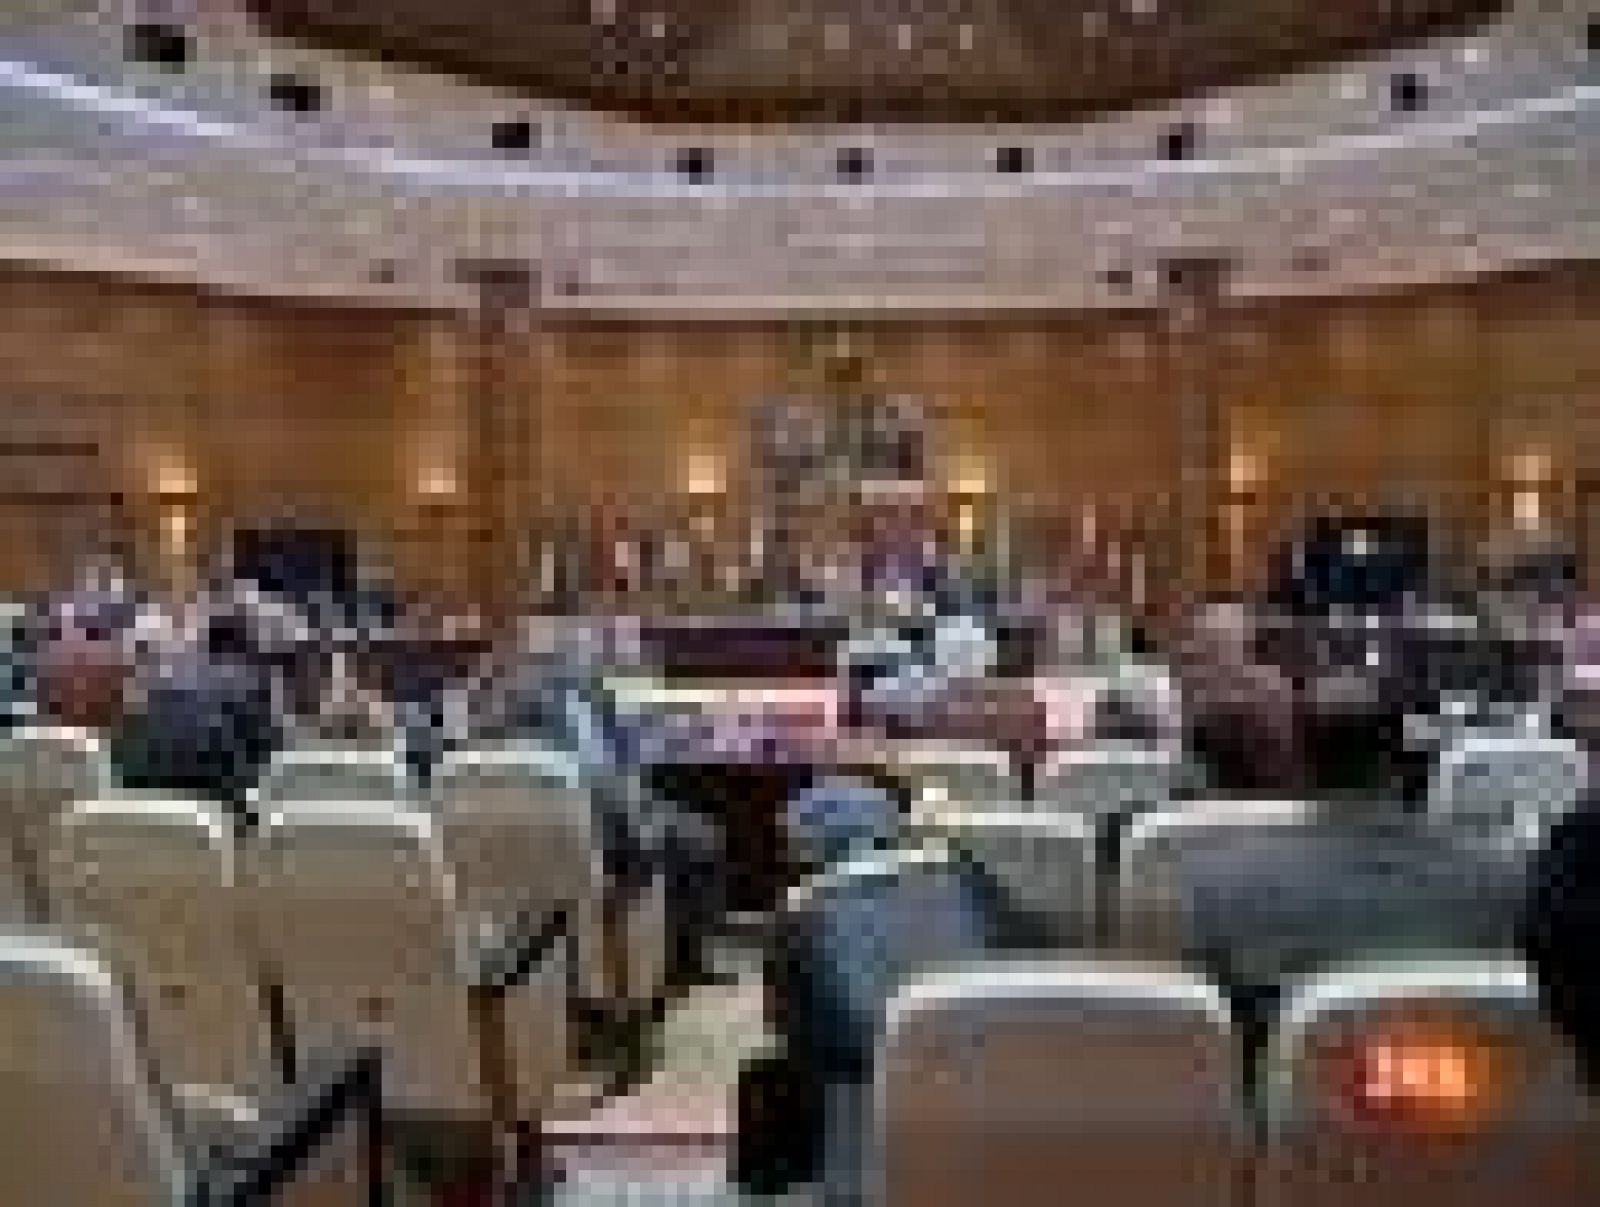  La Liga Árabe ha adoptado este miércoles en Rabat un protocolo para enviar observadores árabes a Siria y ha pedido a Damasco que retire a su delegado permanente de la organización tras unas declaraciones "no diplomáticas".